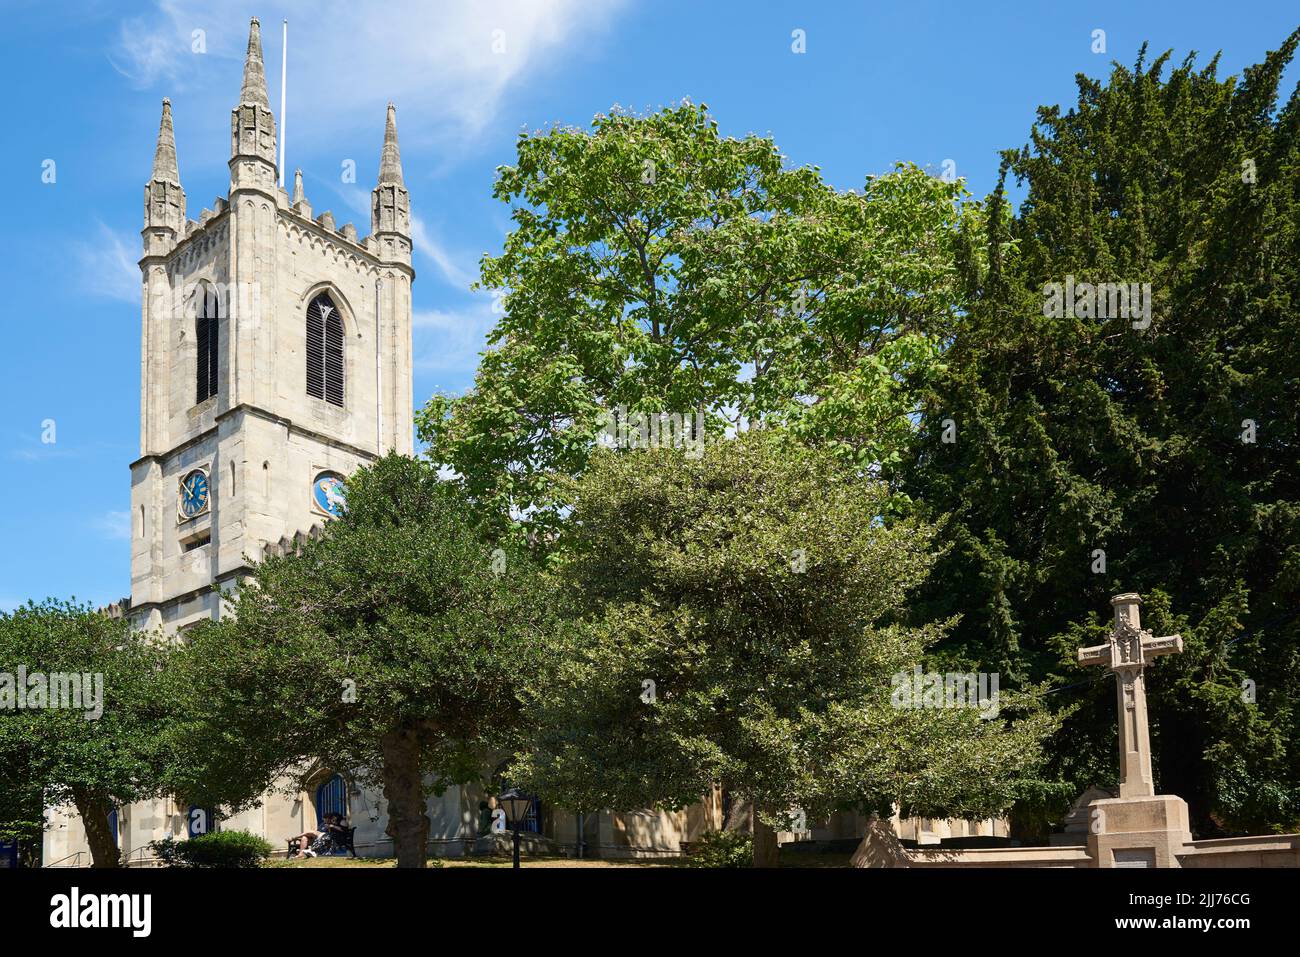 La torre y el cementerio de San Juan Bautista, Windsor, Berkshire, sudeste de Inglaterra Foto de stock